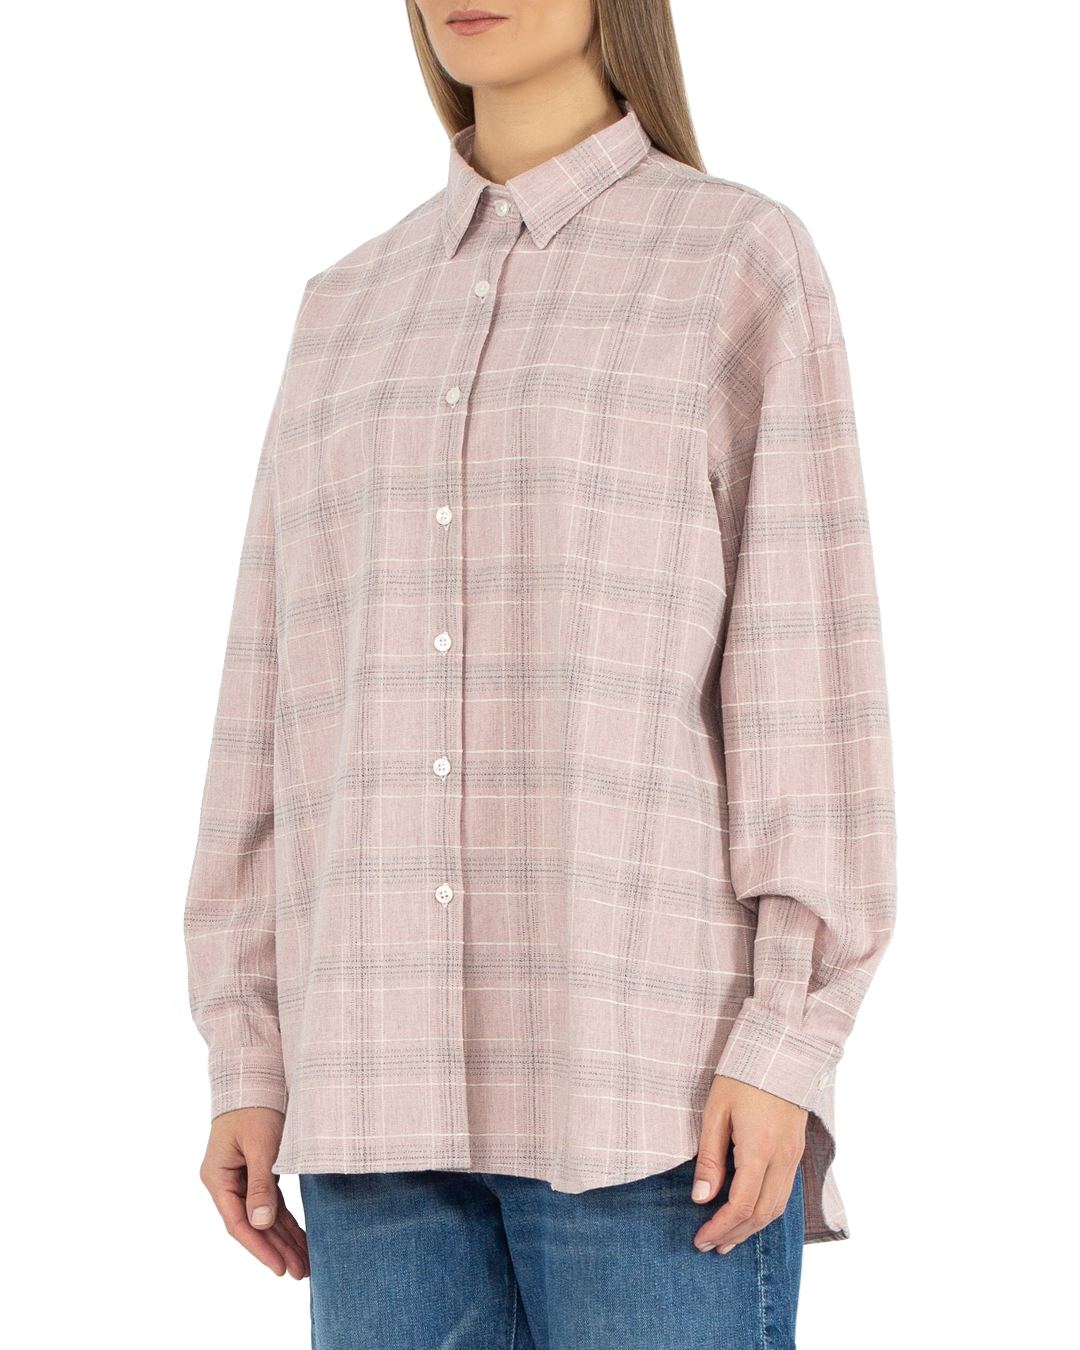 хлопковая рубашка ANTELOPE THE LABEL A2.980 св.розовый+принт l, размер l, цвет св.розовый+принт A2.980 св.розовый+принт l - фото 3